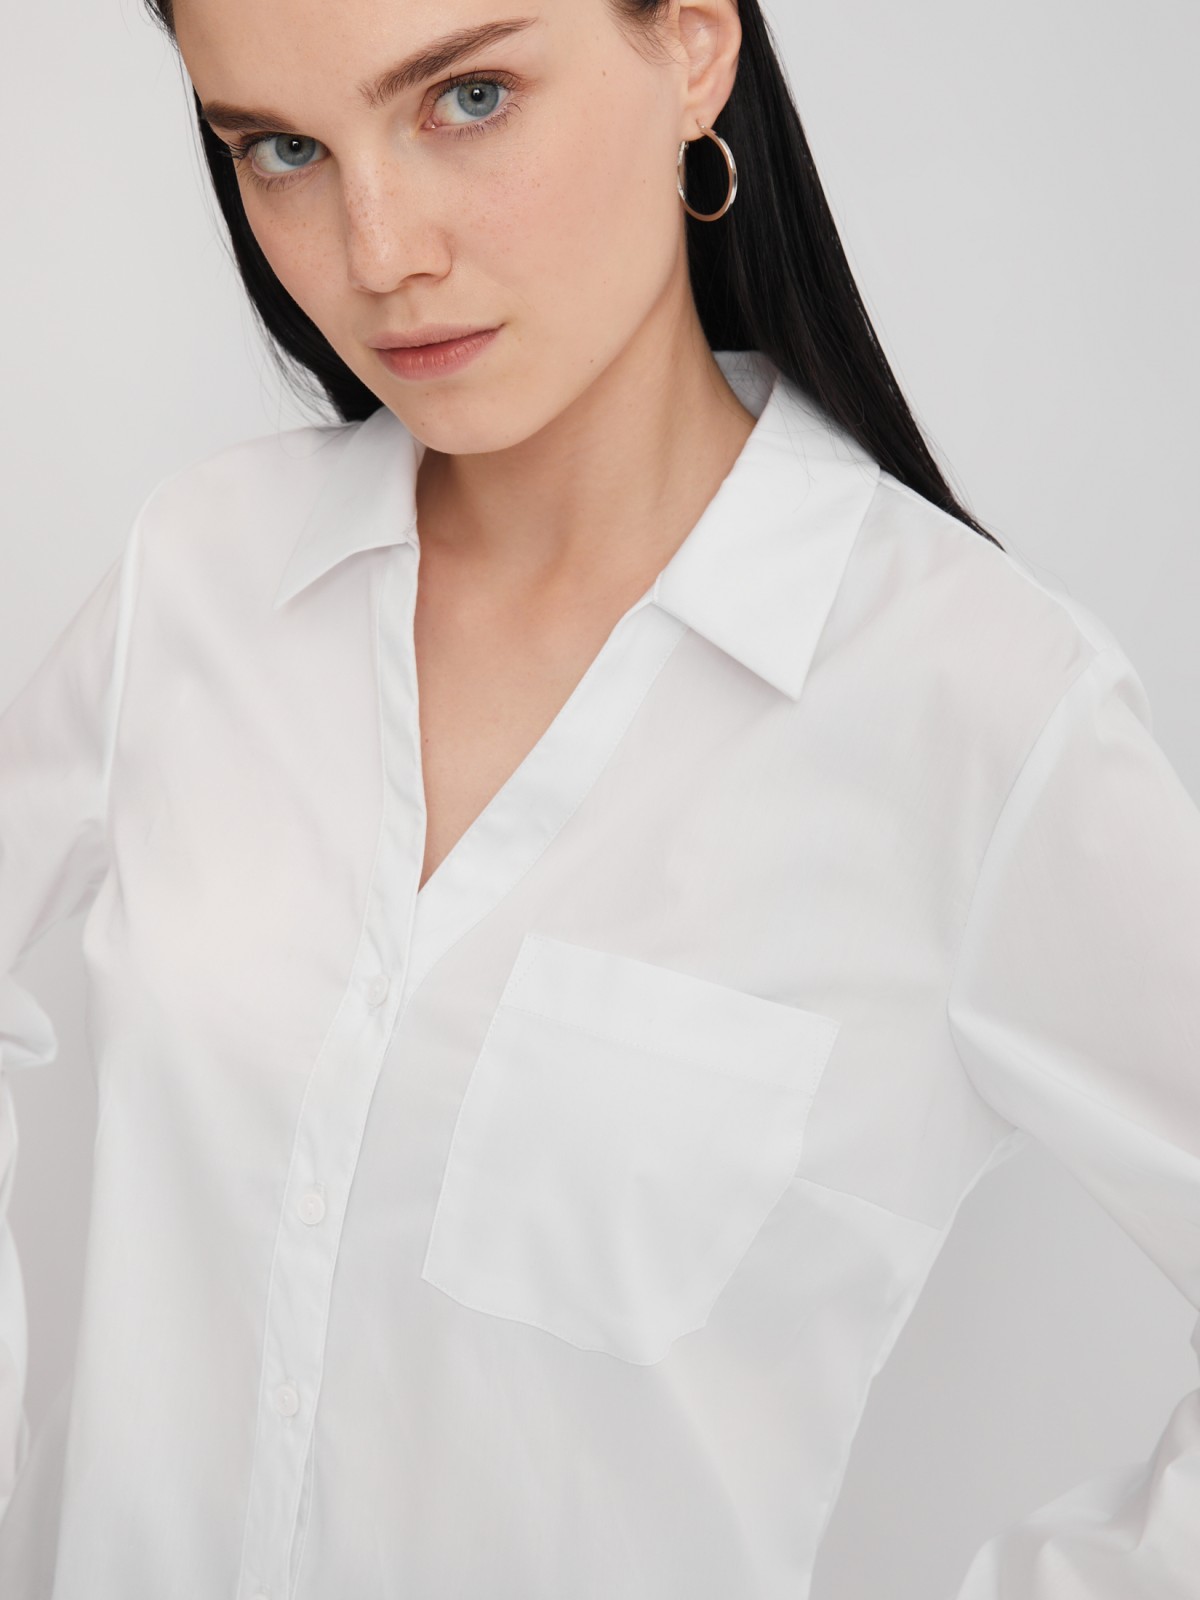 Офисная рубашка с вырезом и карманом zolla 023311159112, цвет белый, размер S - фото 4